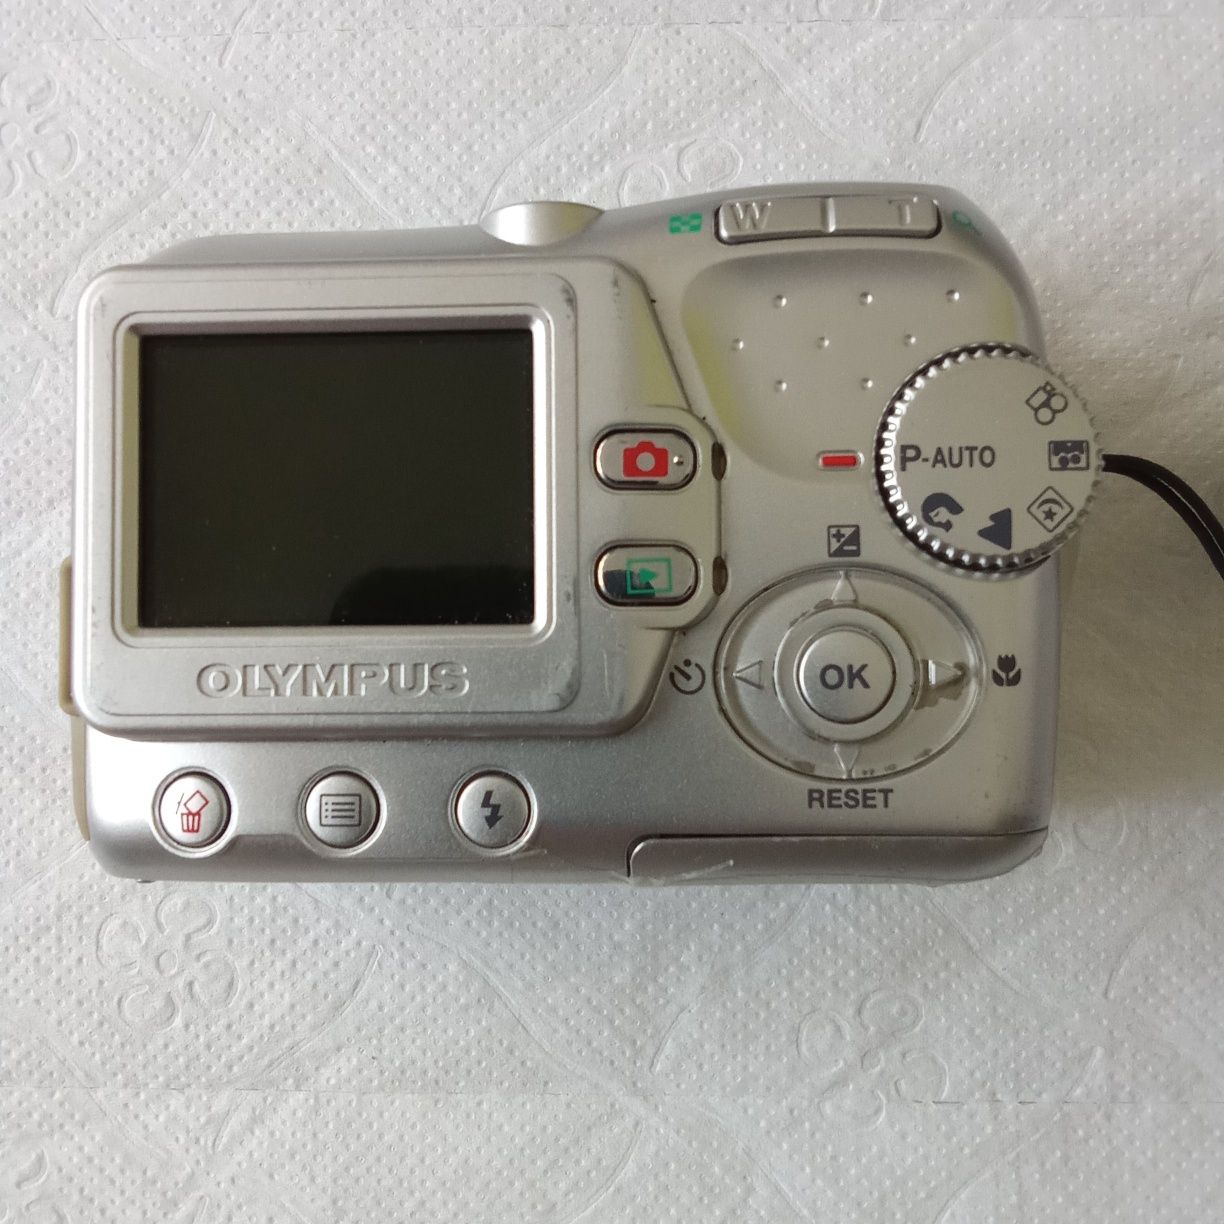 Фотоаппарат OLYMPUS C-370 ZOOM  3.2 Megapixel